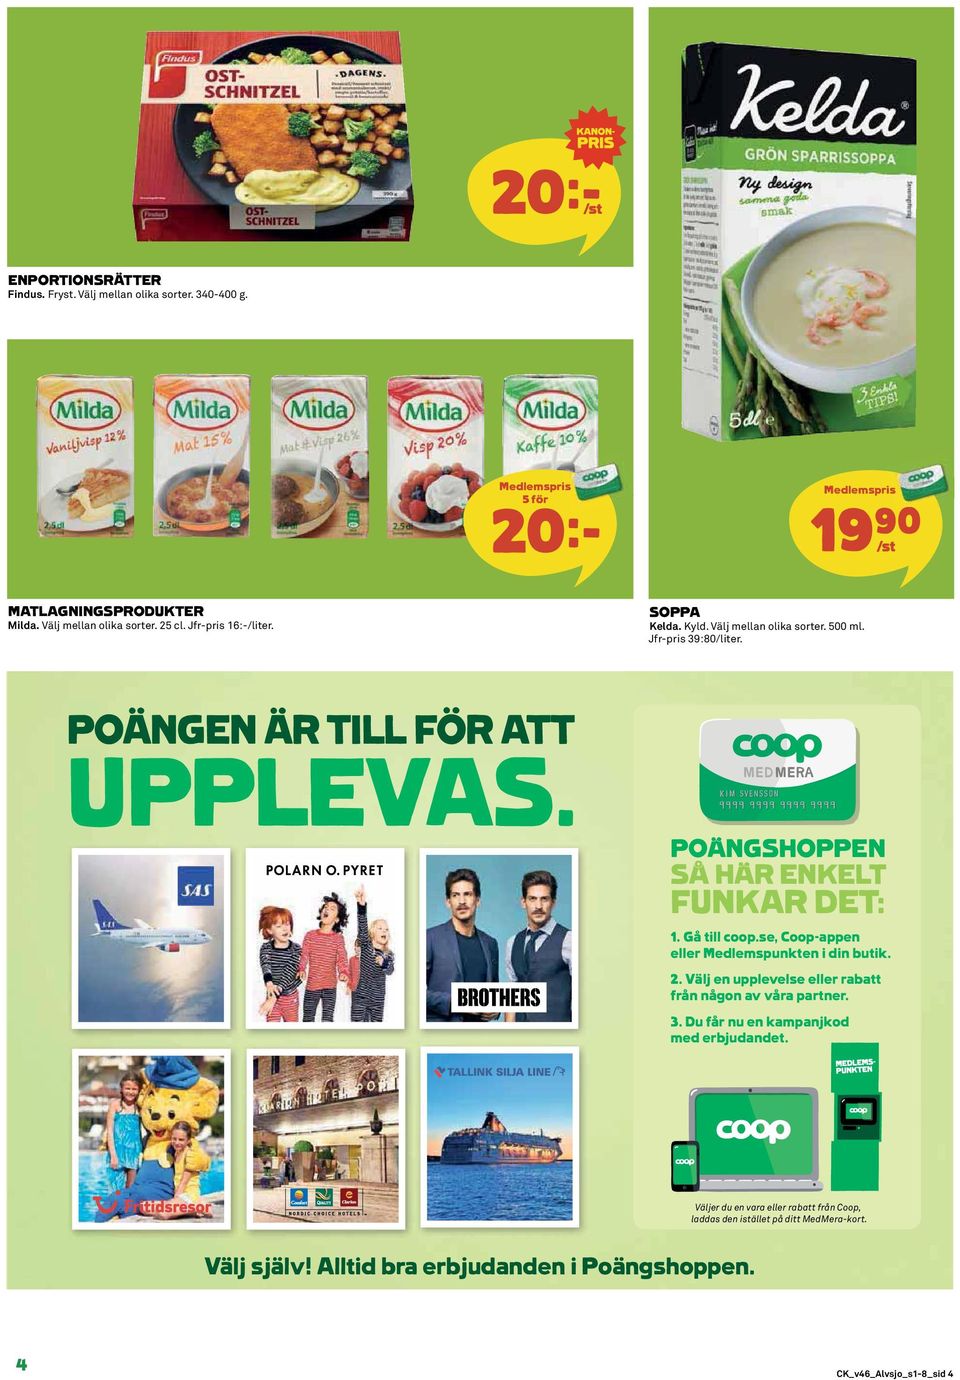 POÄNGSHOPPEN SÅ HÄR ENKELT FUNKAR DET: 1. Gå till coop.se, Coop-appen eller Medlemspunkten i din butik. 2.